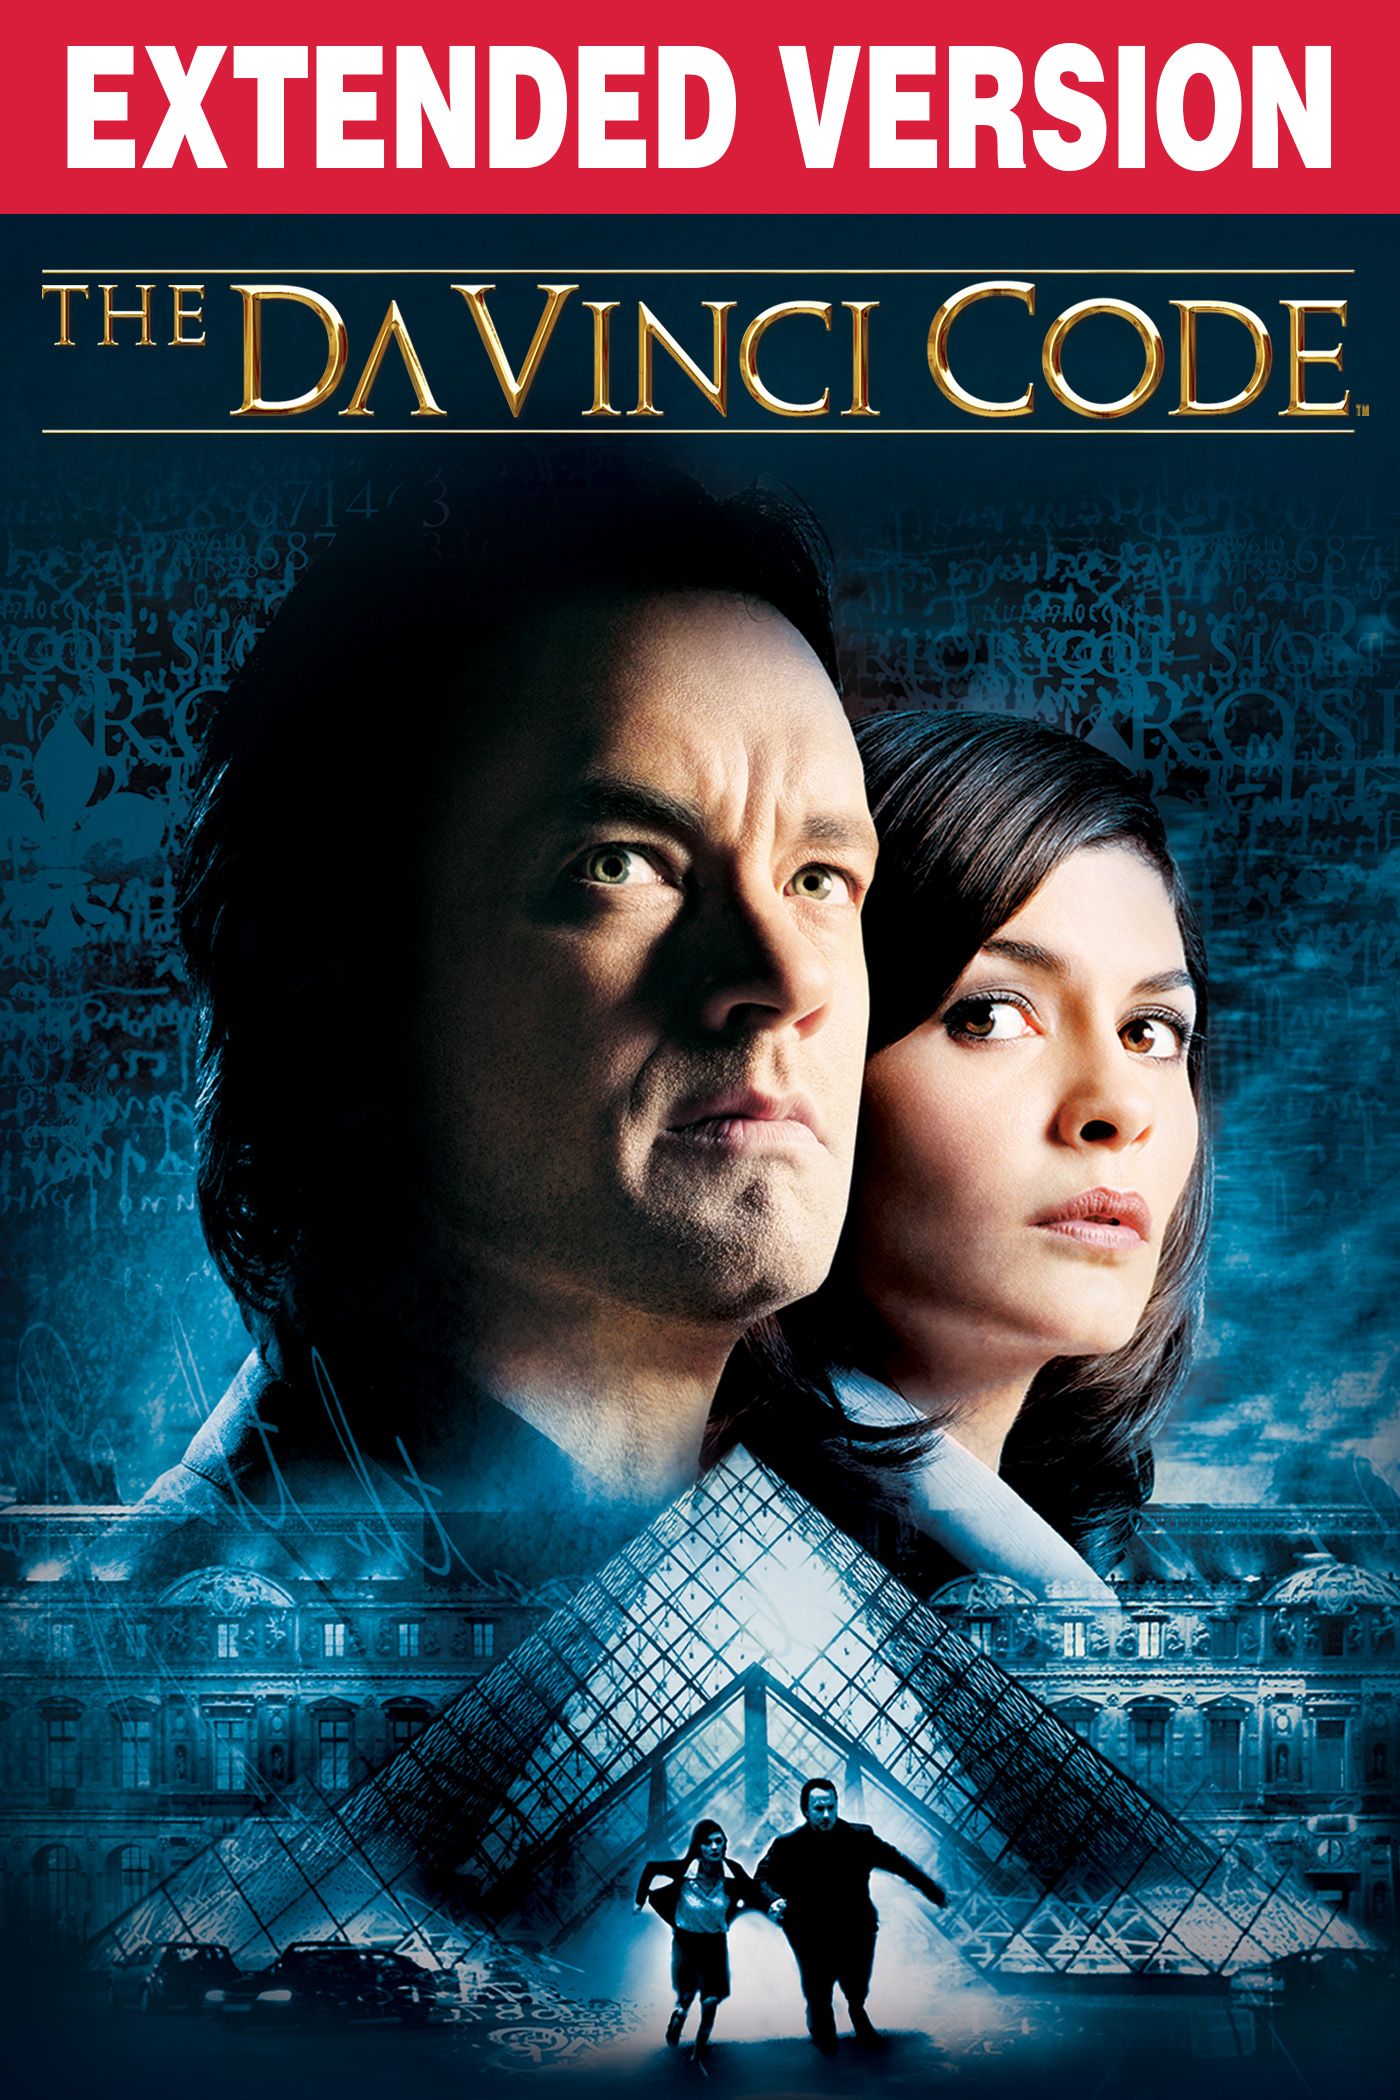 the da vinci code full movie free 123